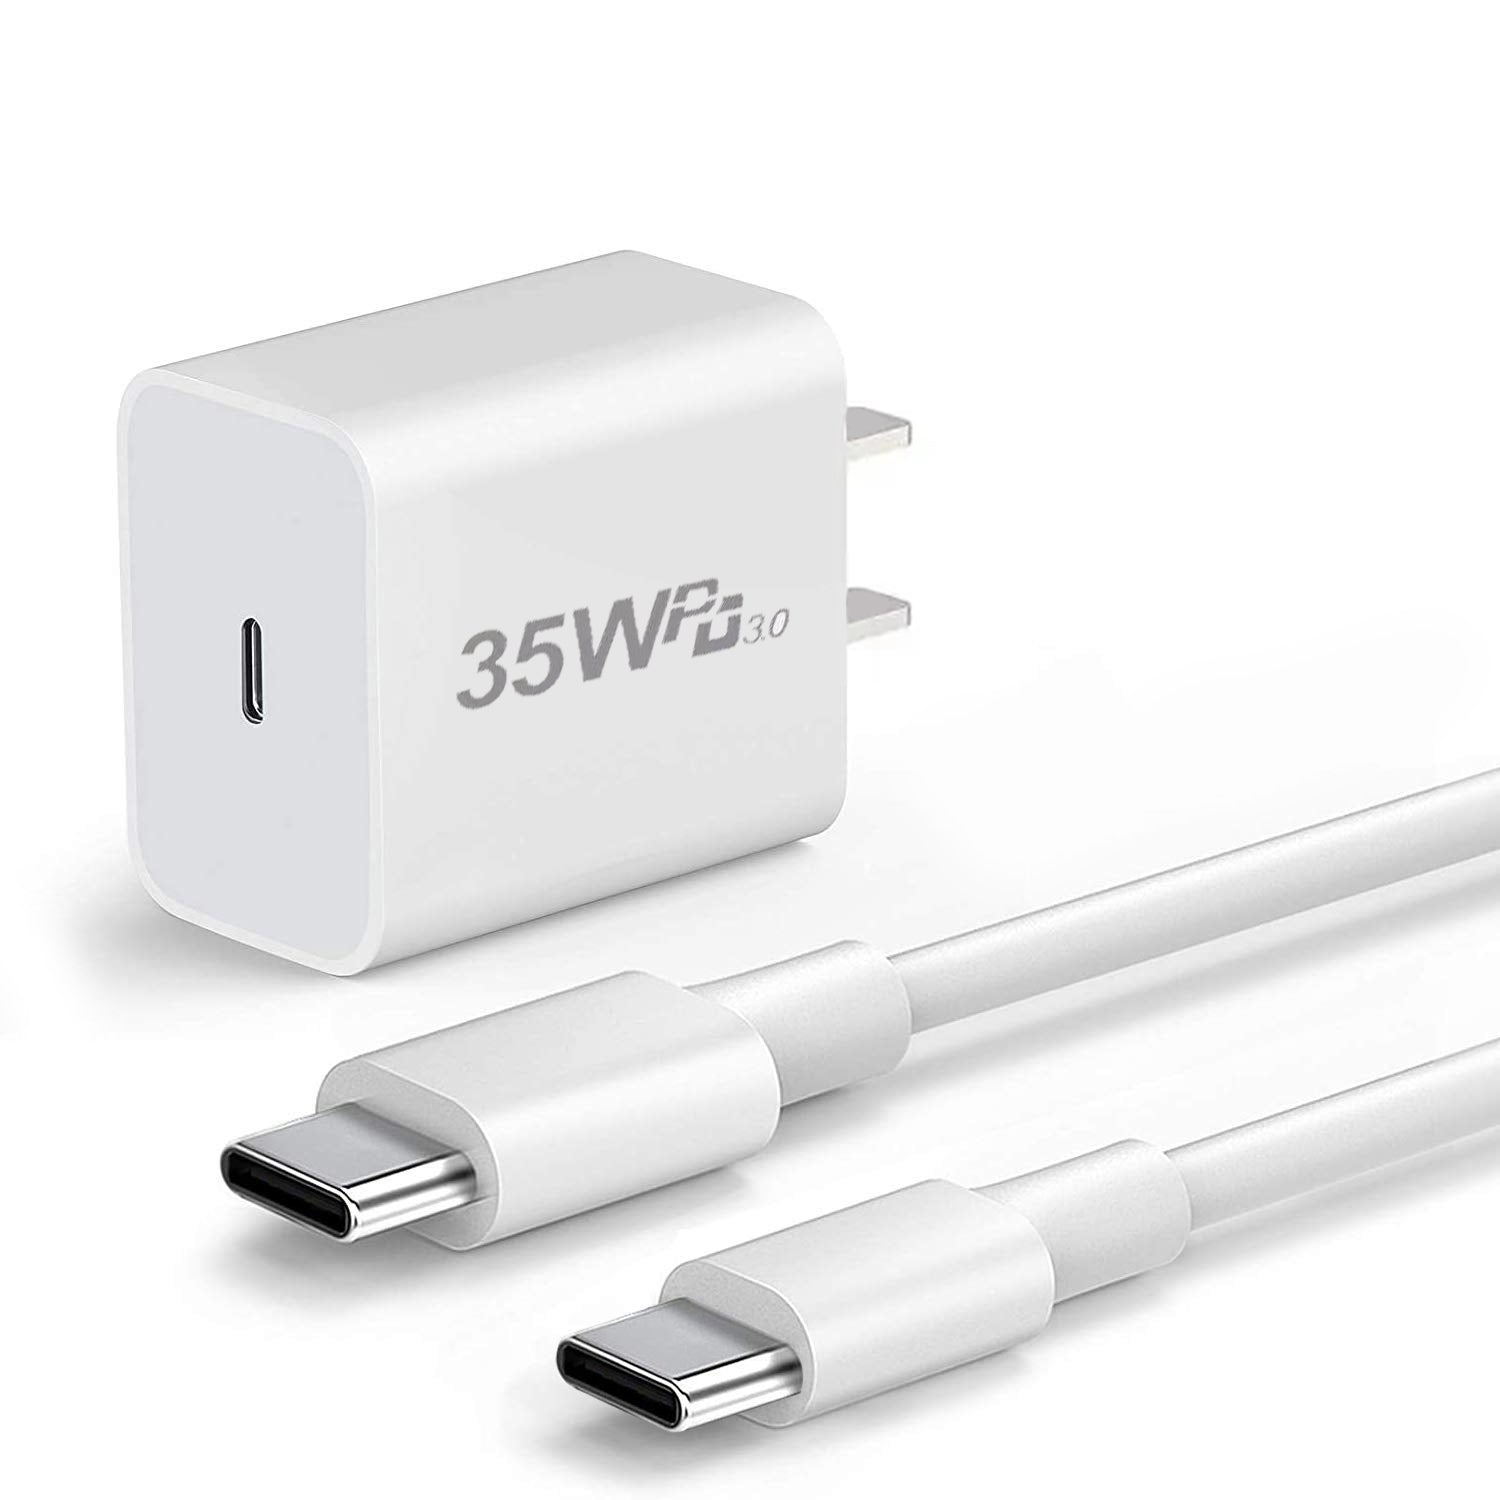 Chargeur Secteur et Cable USB compatible iPhone 4